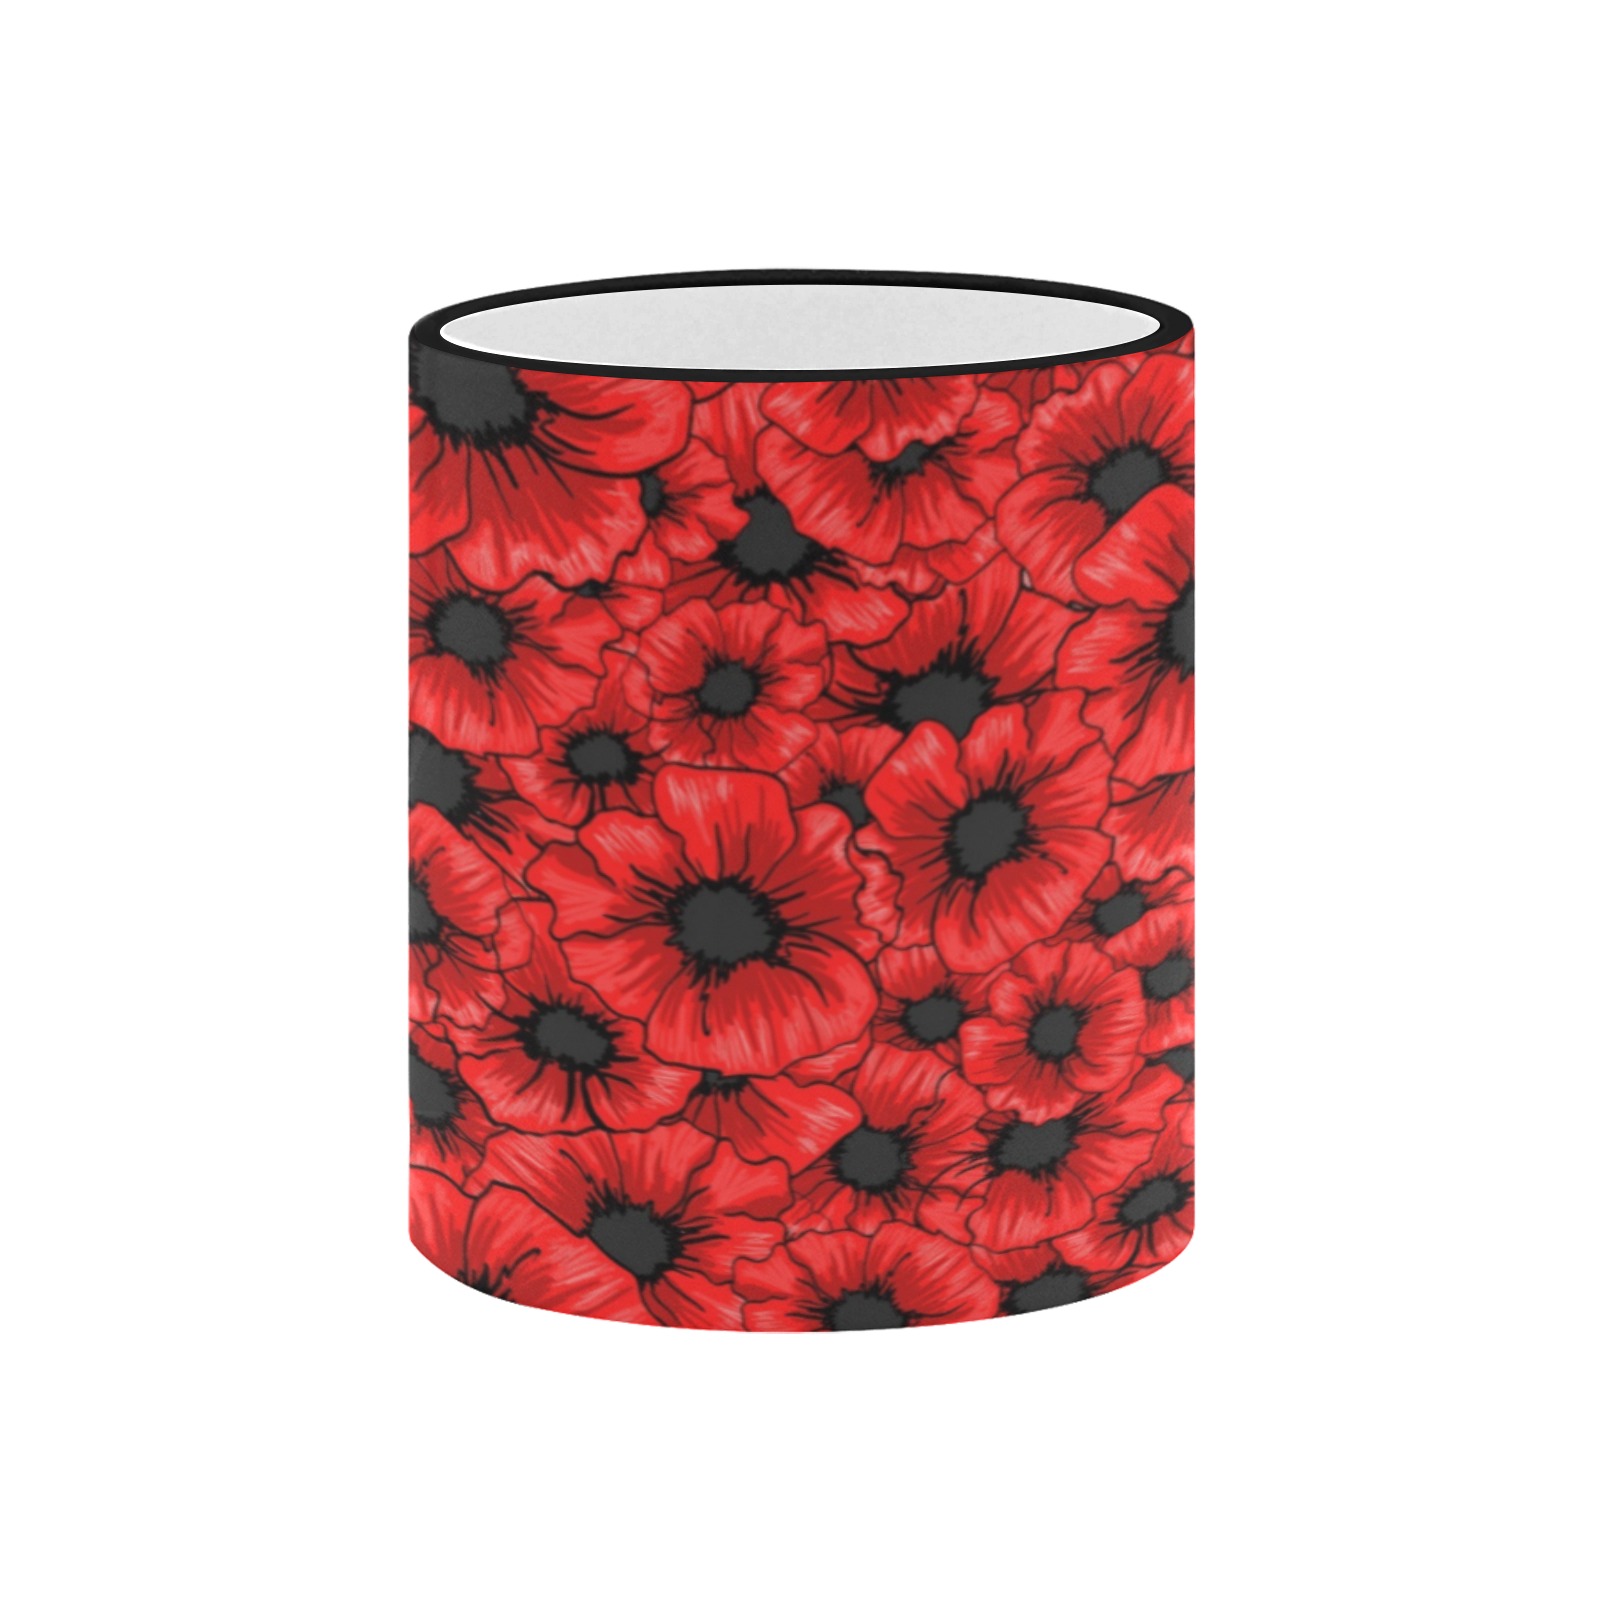 Red Poppy Custom Edge Color Mug (11oz)